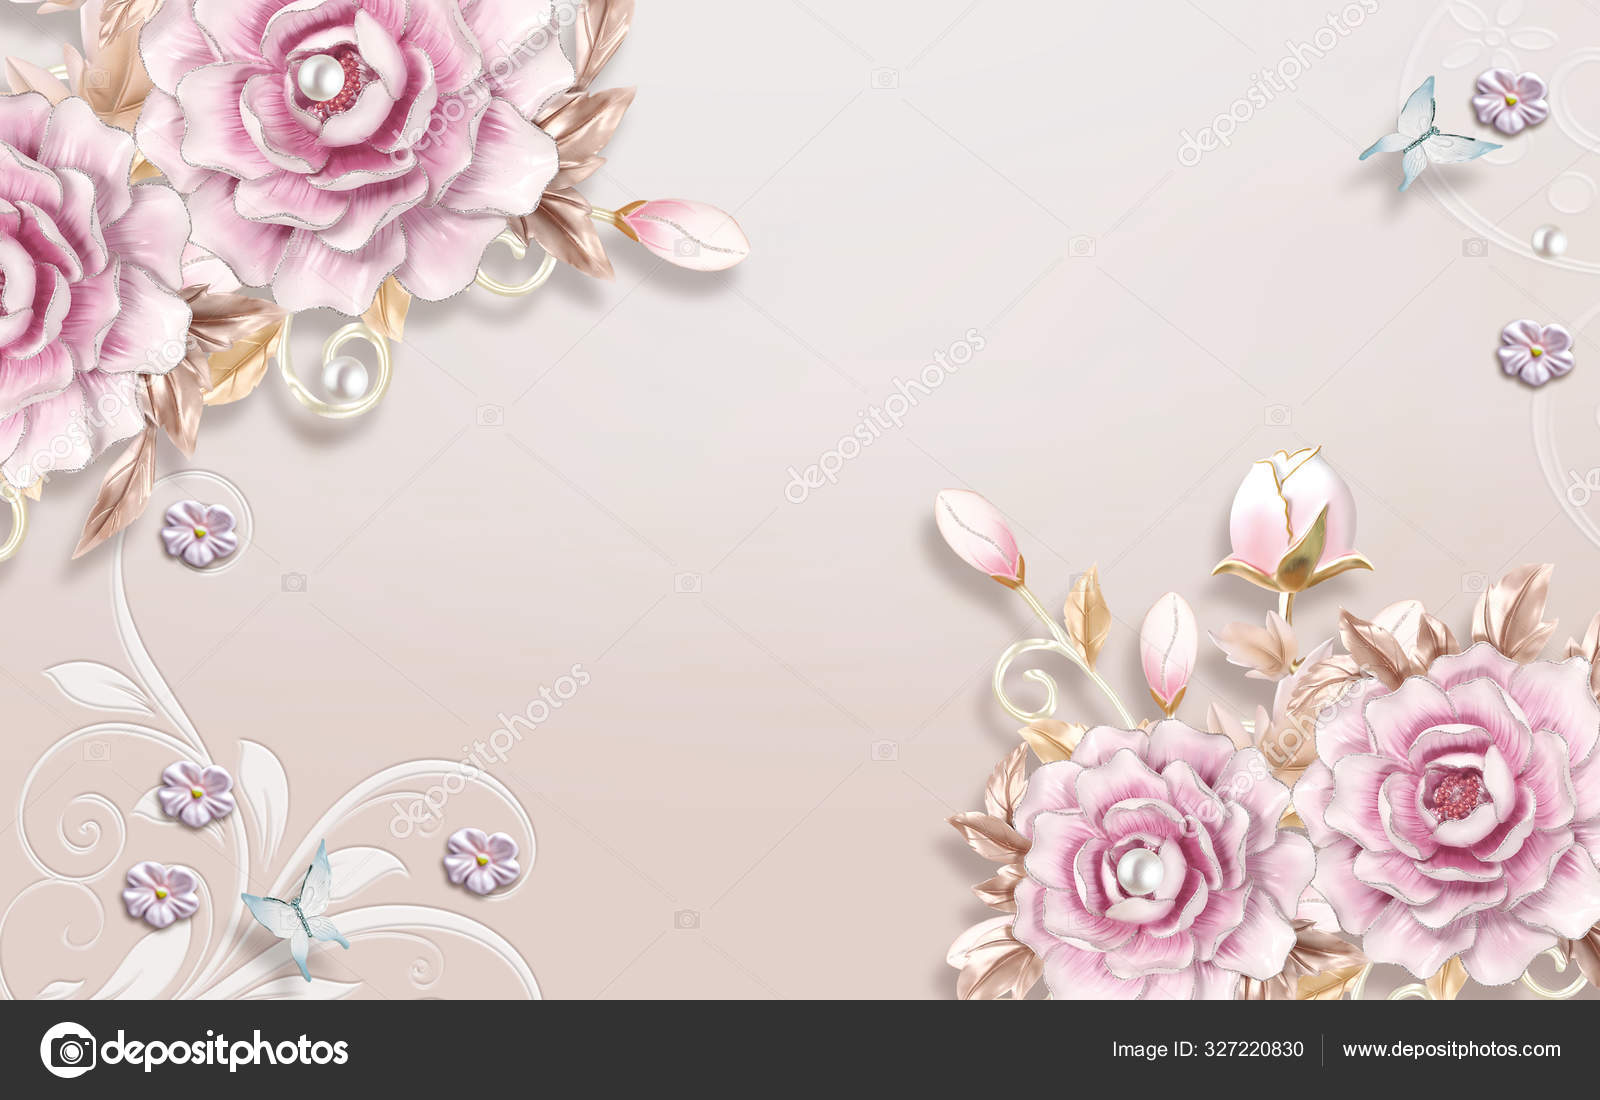 simple flower wallpapers